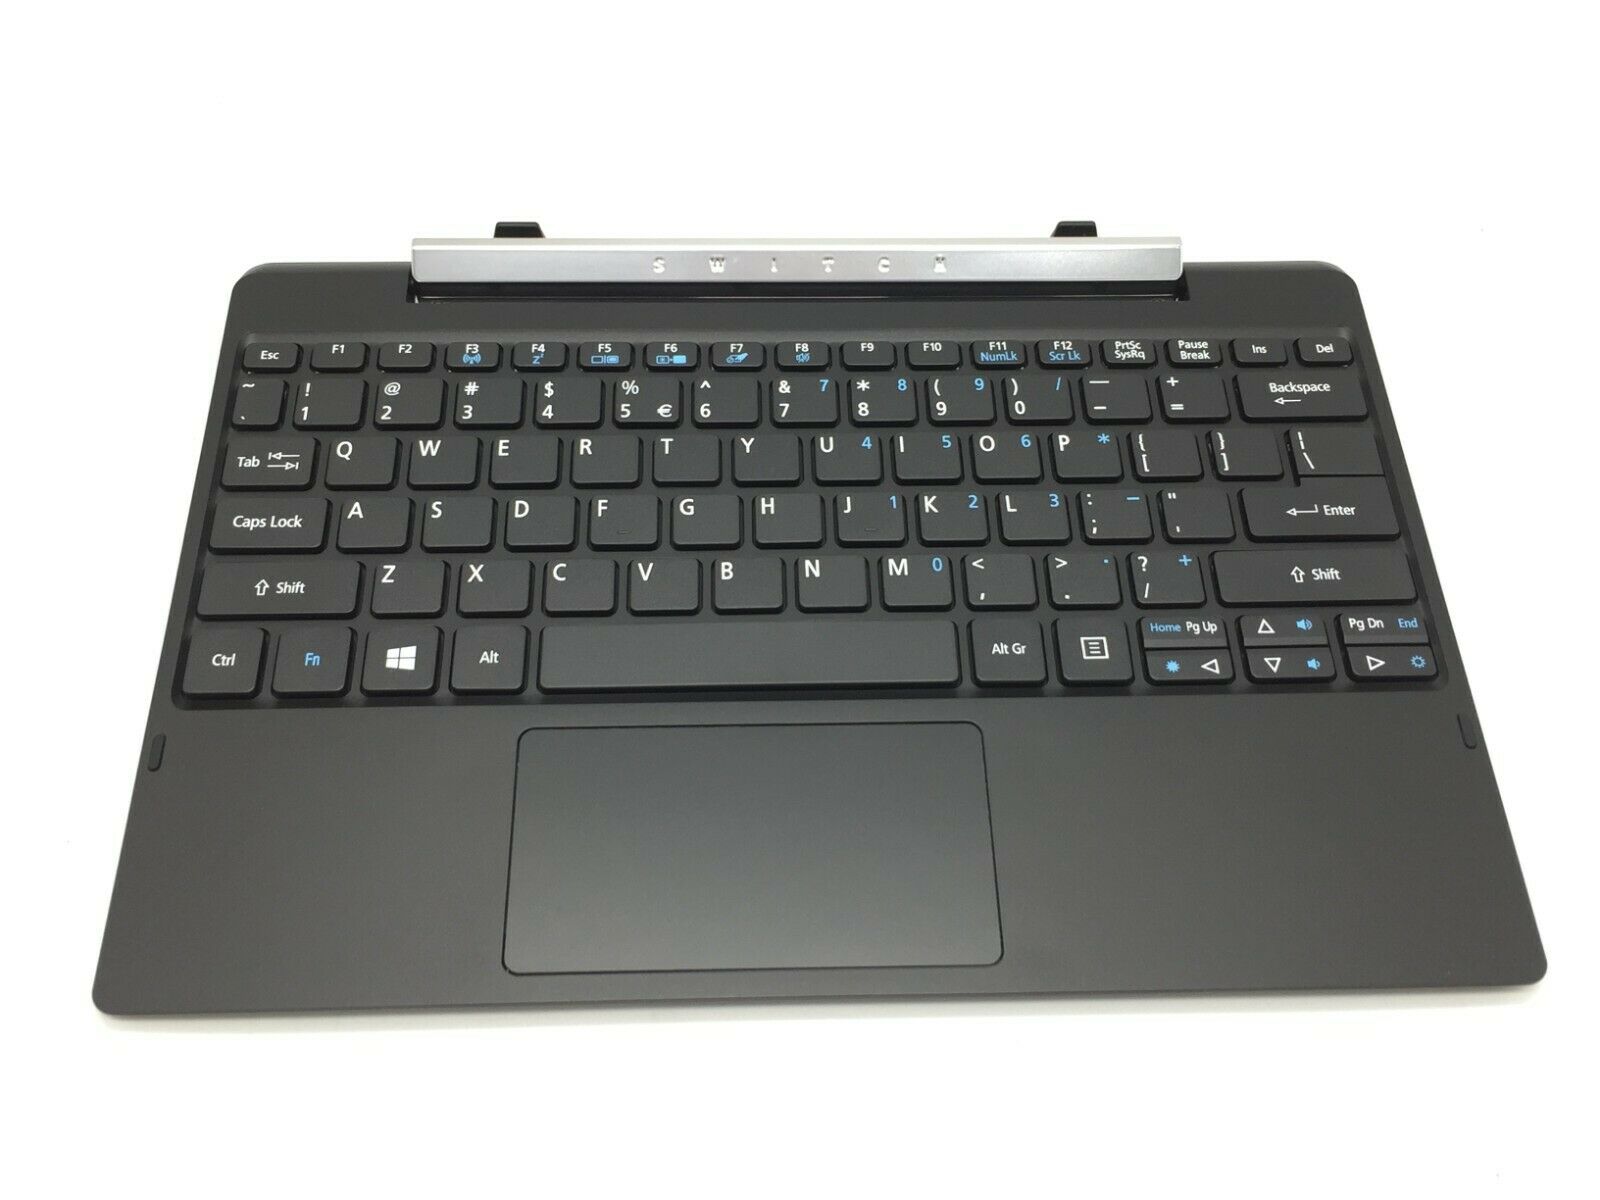 Acer Switch V 10 Sw5-017p-17jj Keyboard Base Only Shale Black 2017 No Tablet Inc